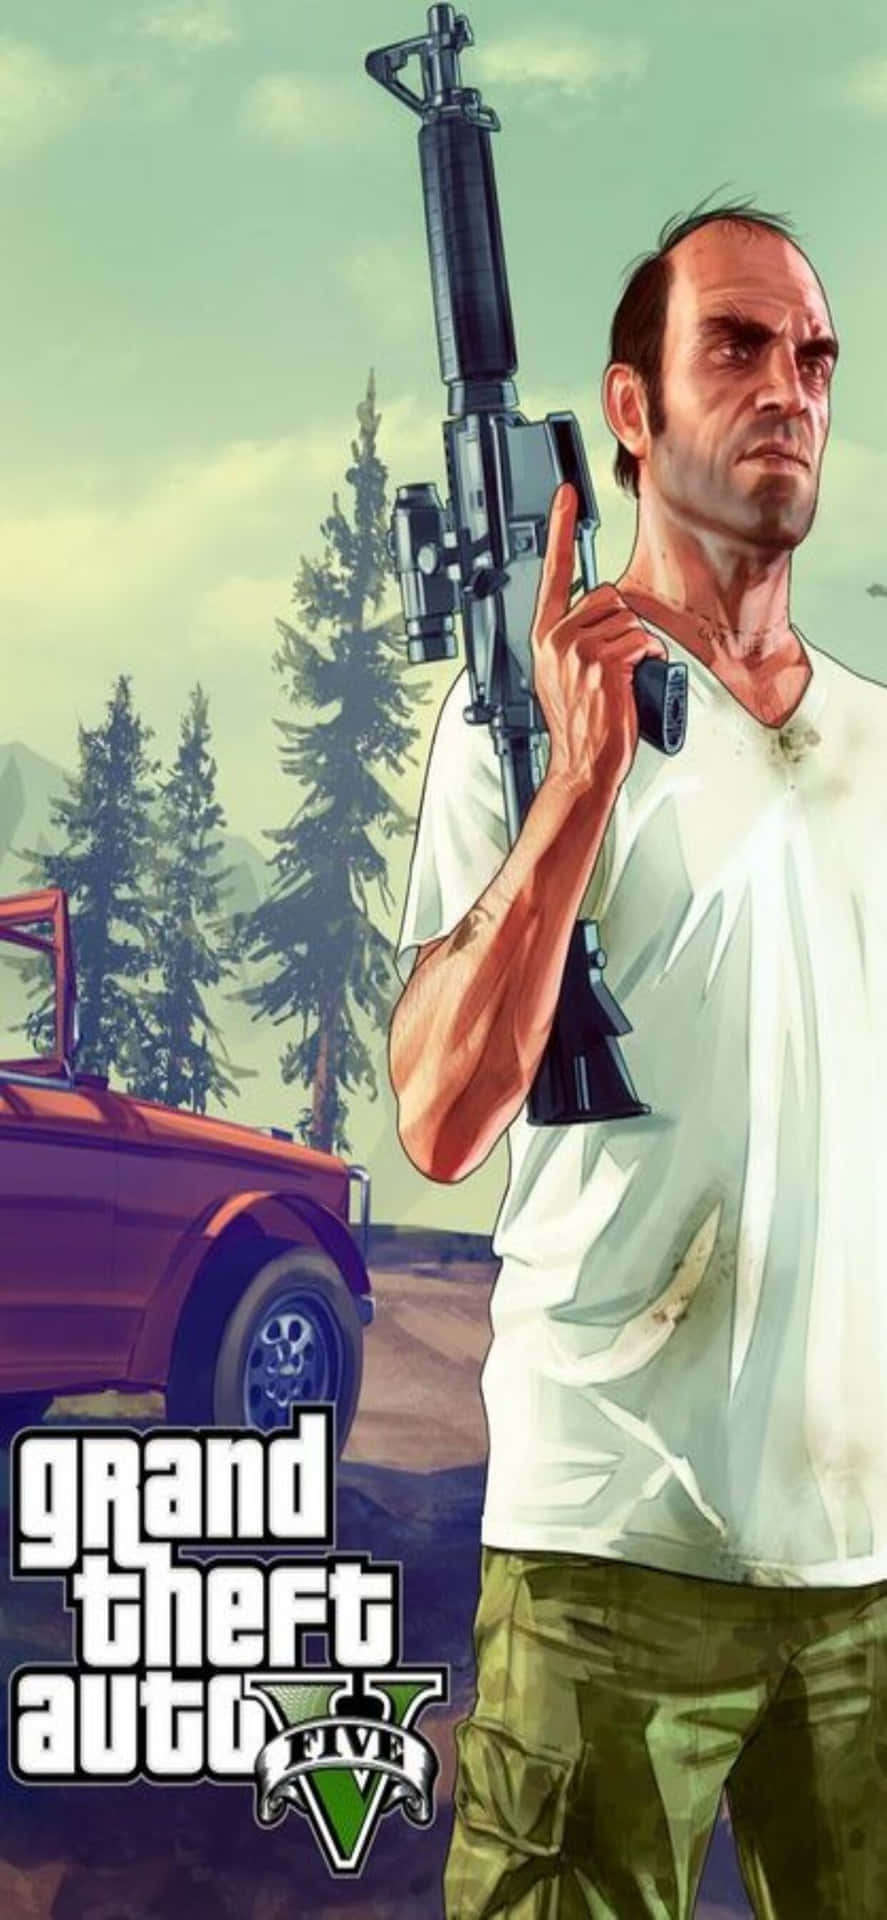 Iphonexs Max Bakgrundsbild Från Grand Theft Auto V Med Trevor Och Gevär.